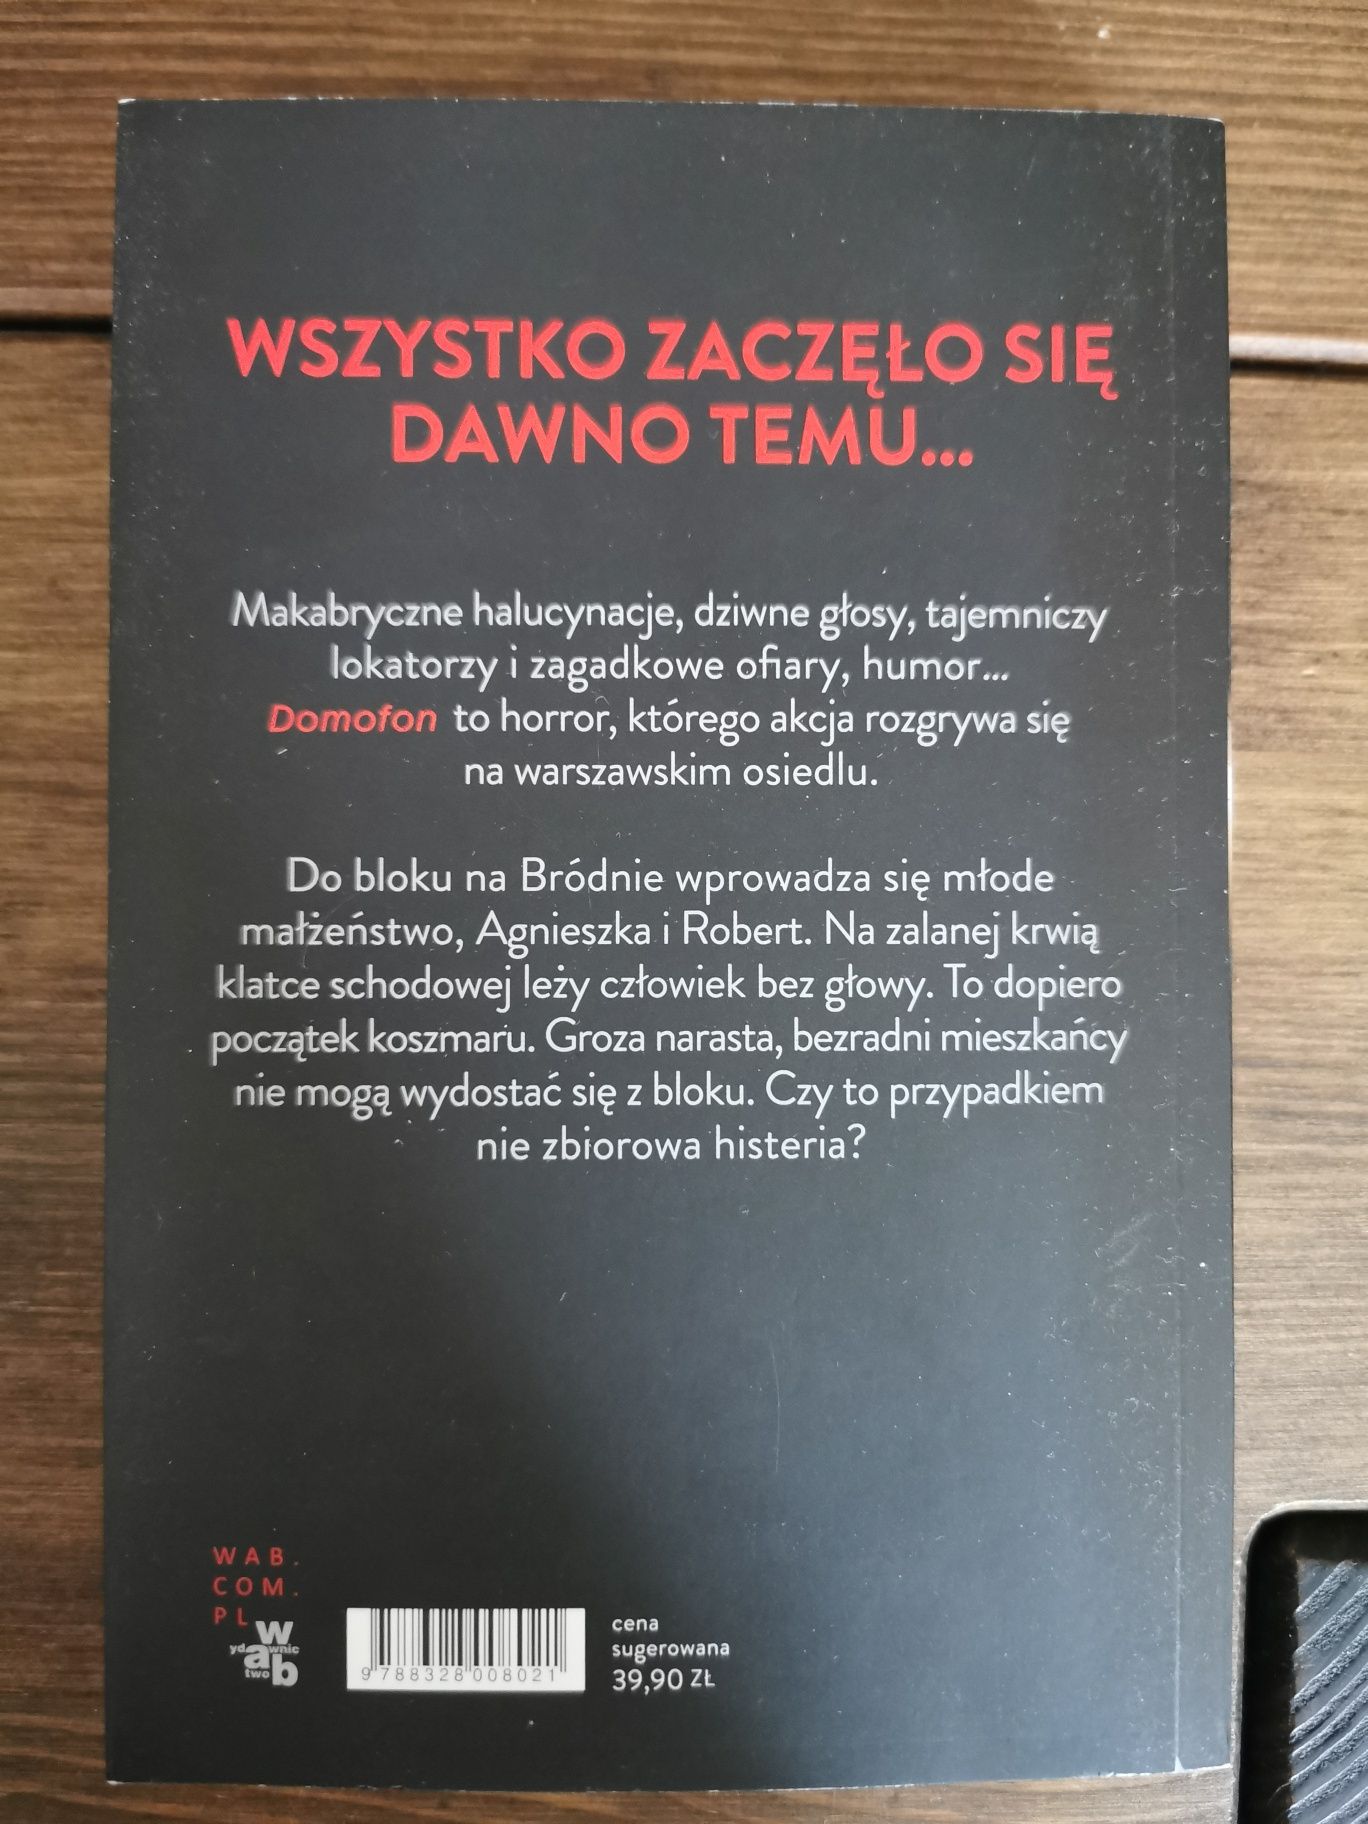 Domofon - Zygmunt Miłoszewski